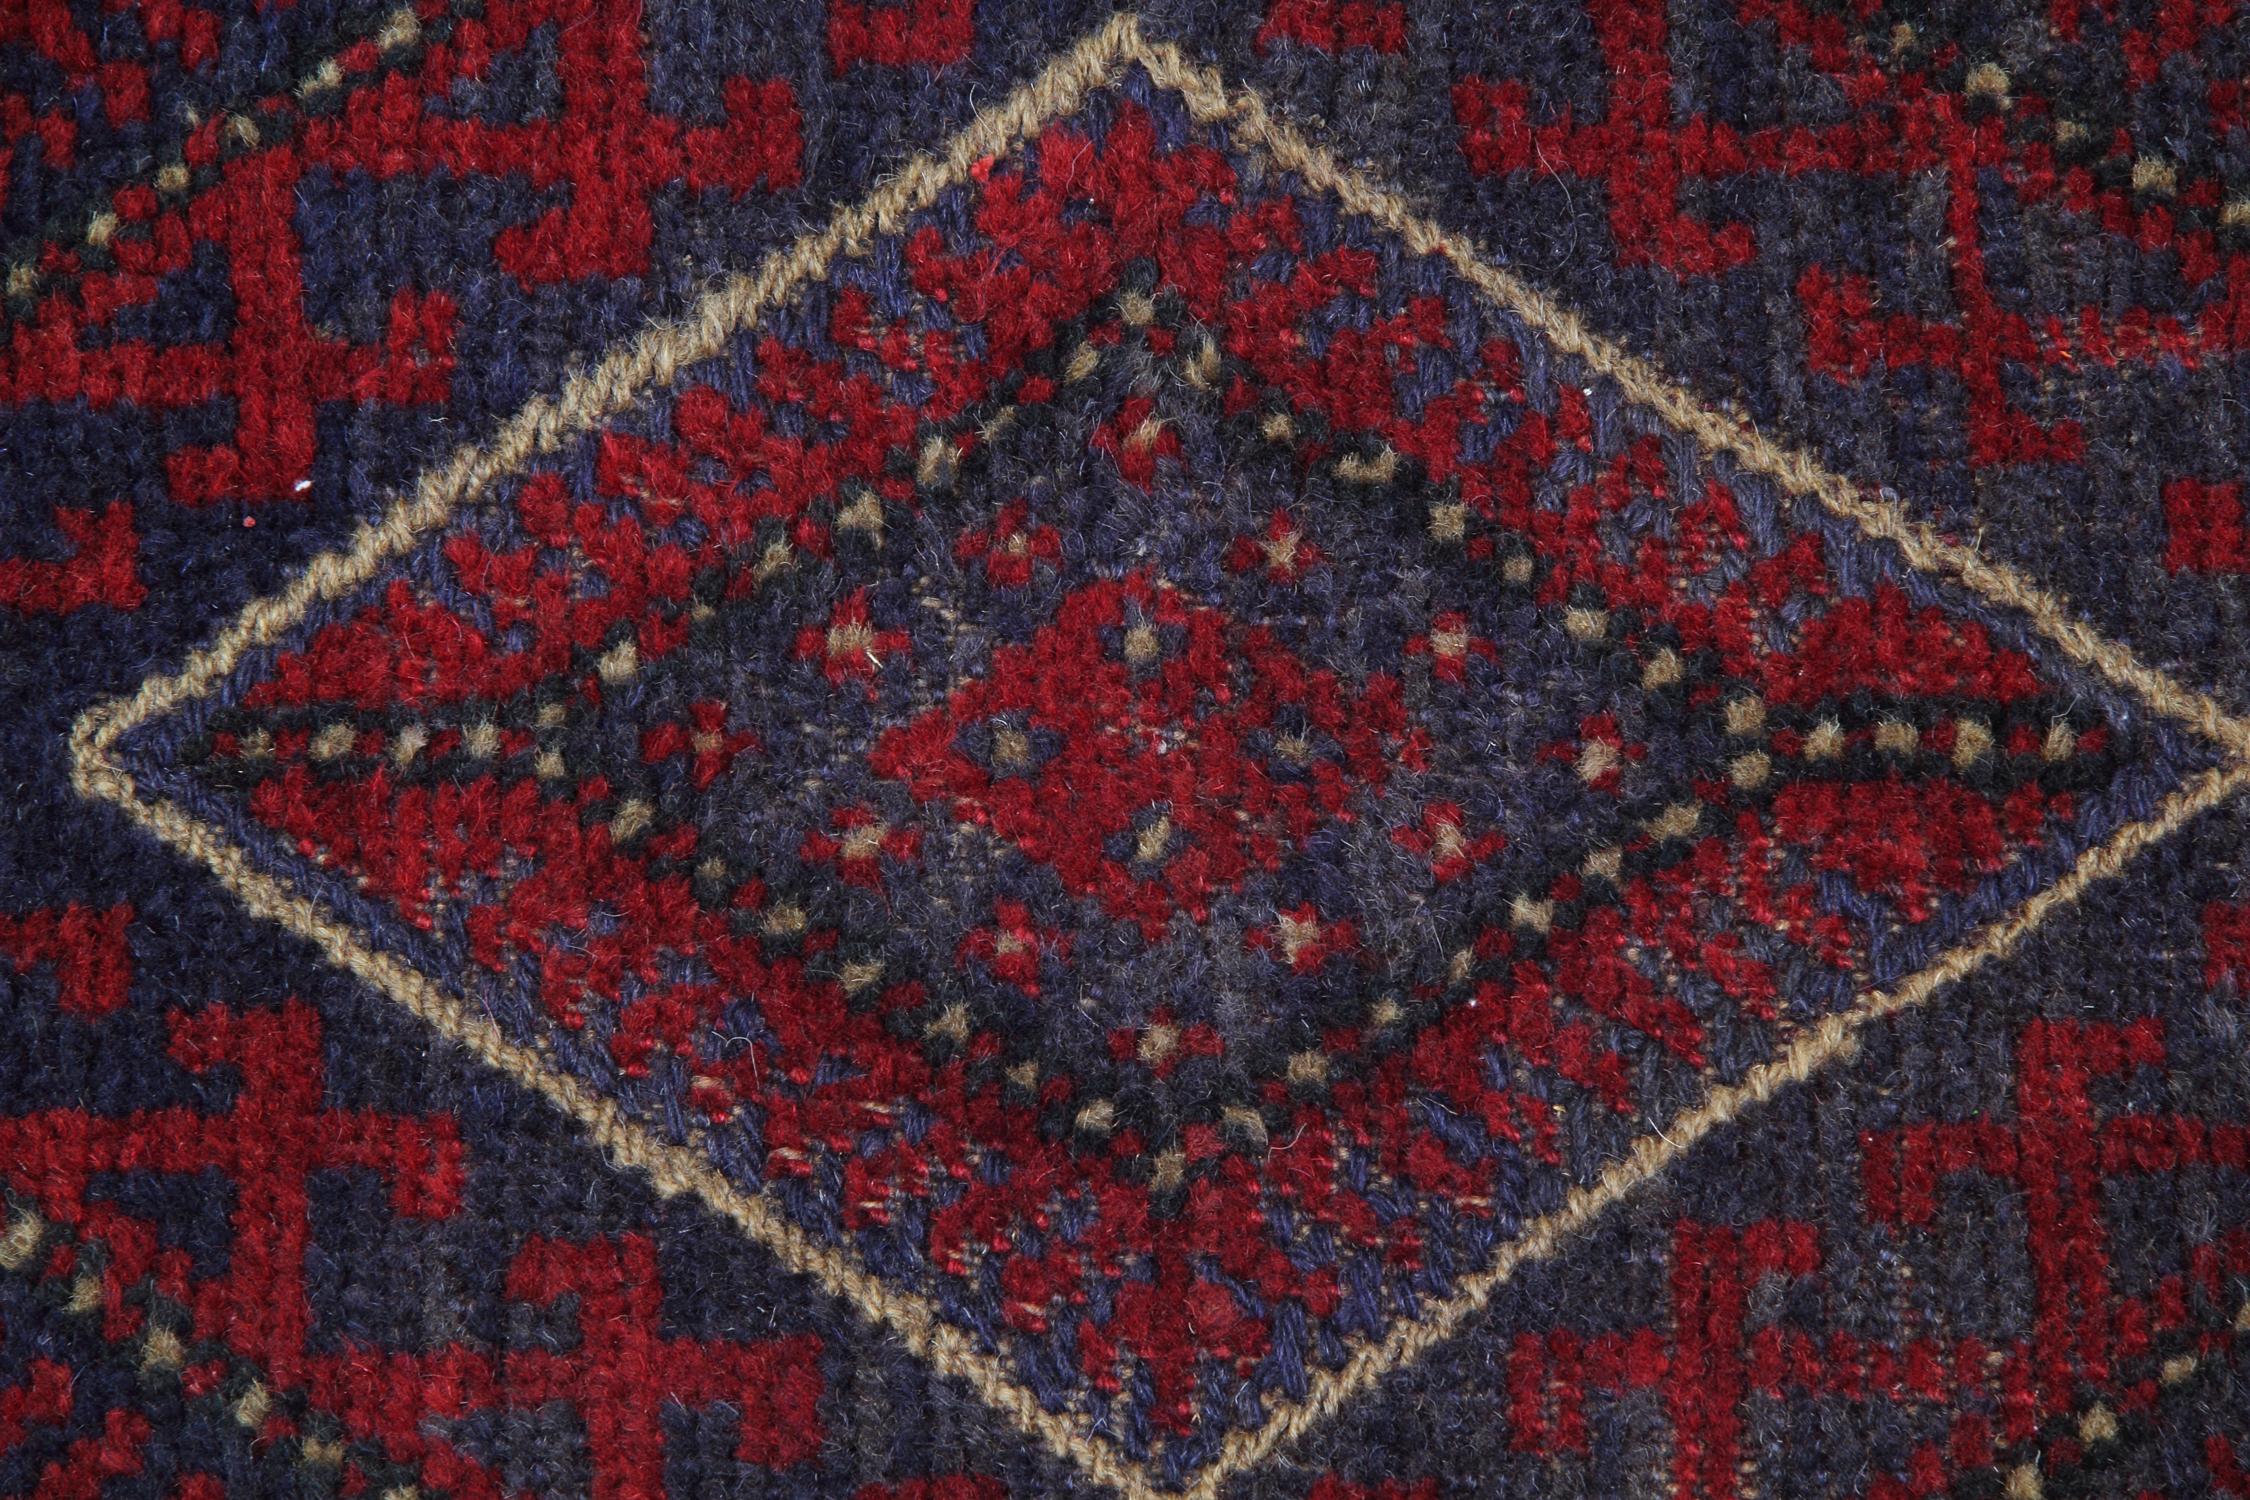 Dieser beeindruckende antike rote Teppich wird von unseren Meisterwebern in Kaukasien hergestellt. Diese besonderen Teppichläufer werden mit natürlichen pflanzlichen Farbstoffen hergestellt. Die gemusterten Teppiche zeigen ein durchgängiges